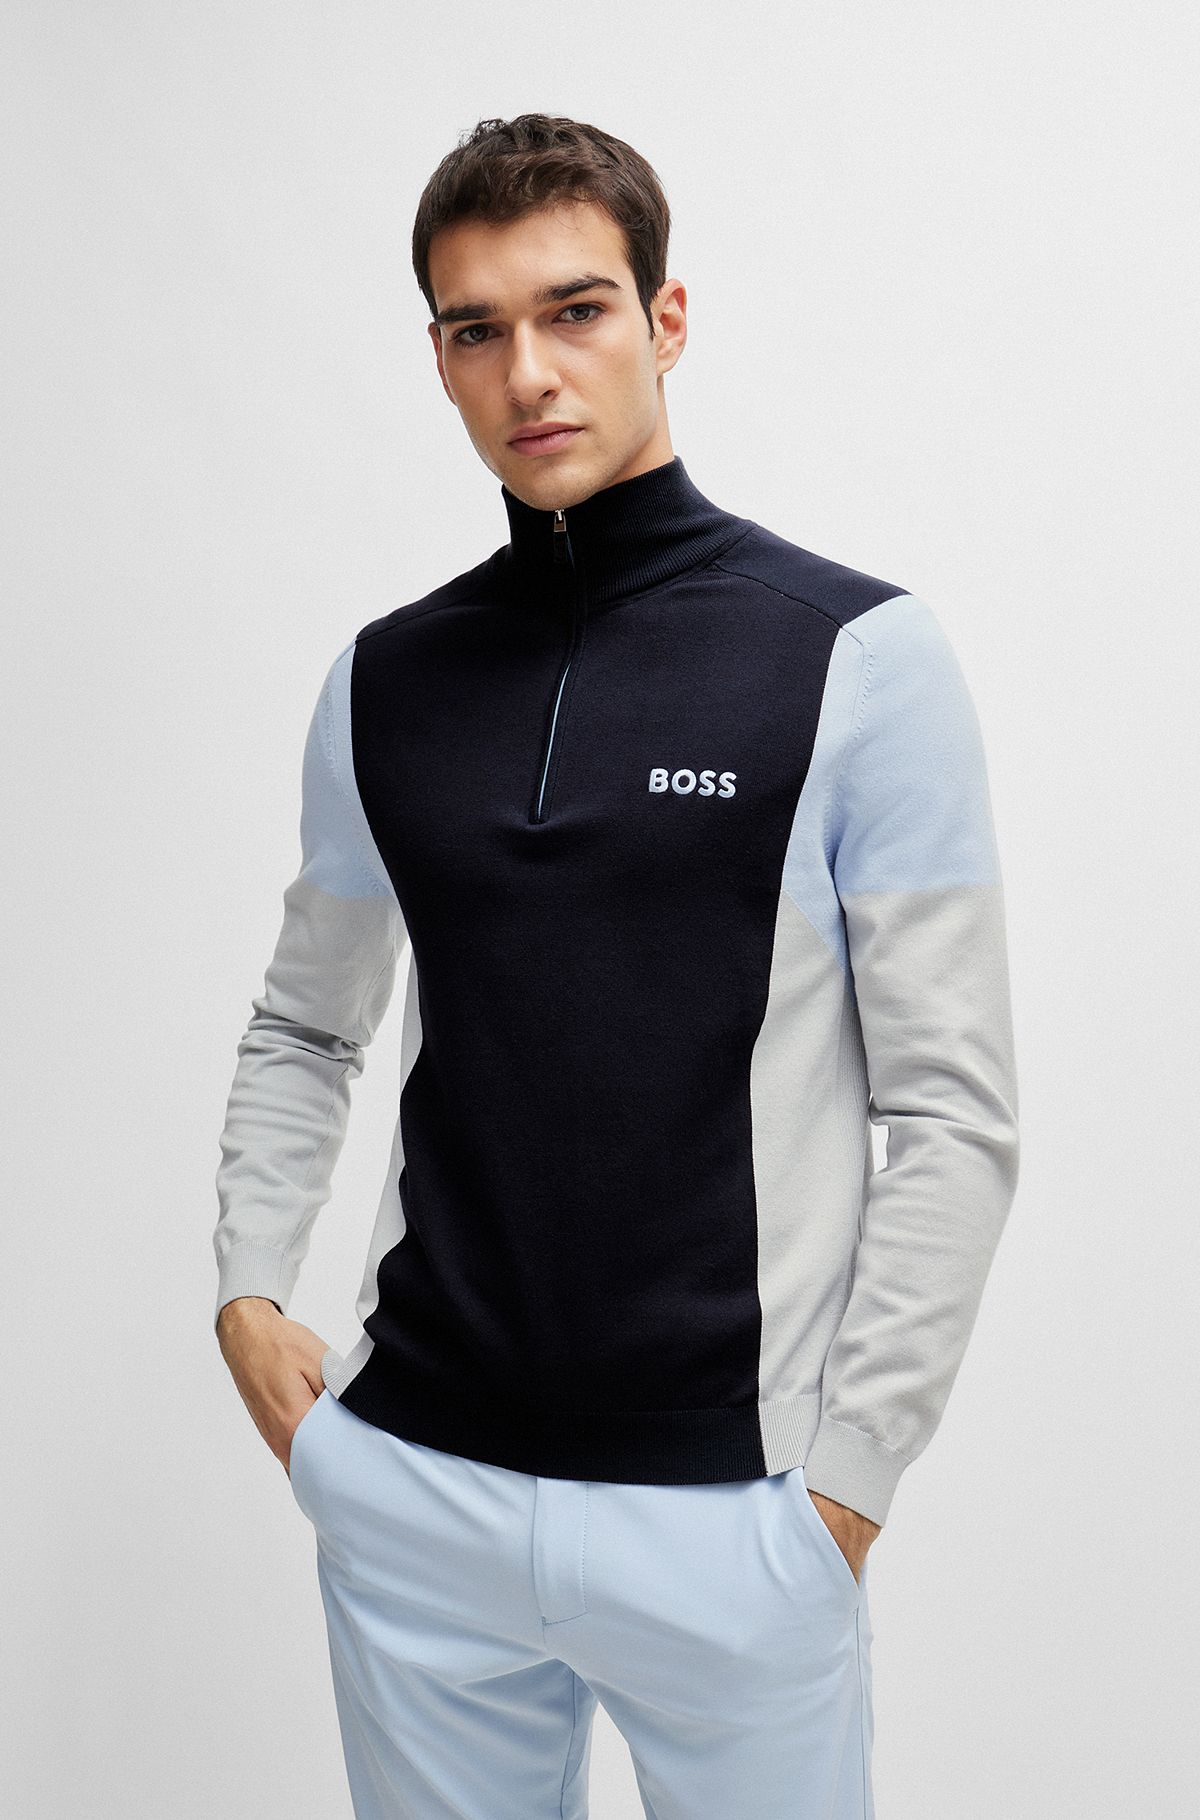 HUGO BOSS New Arrivals | Clothing for Men | Masculine & Modern